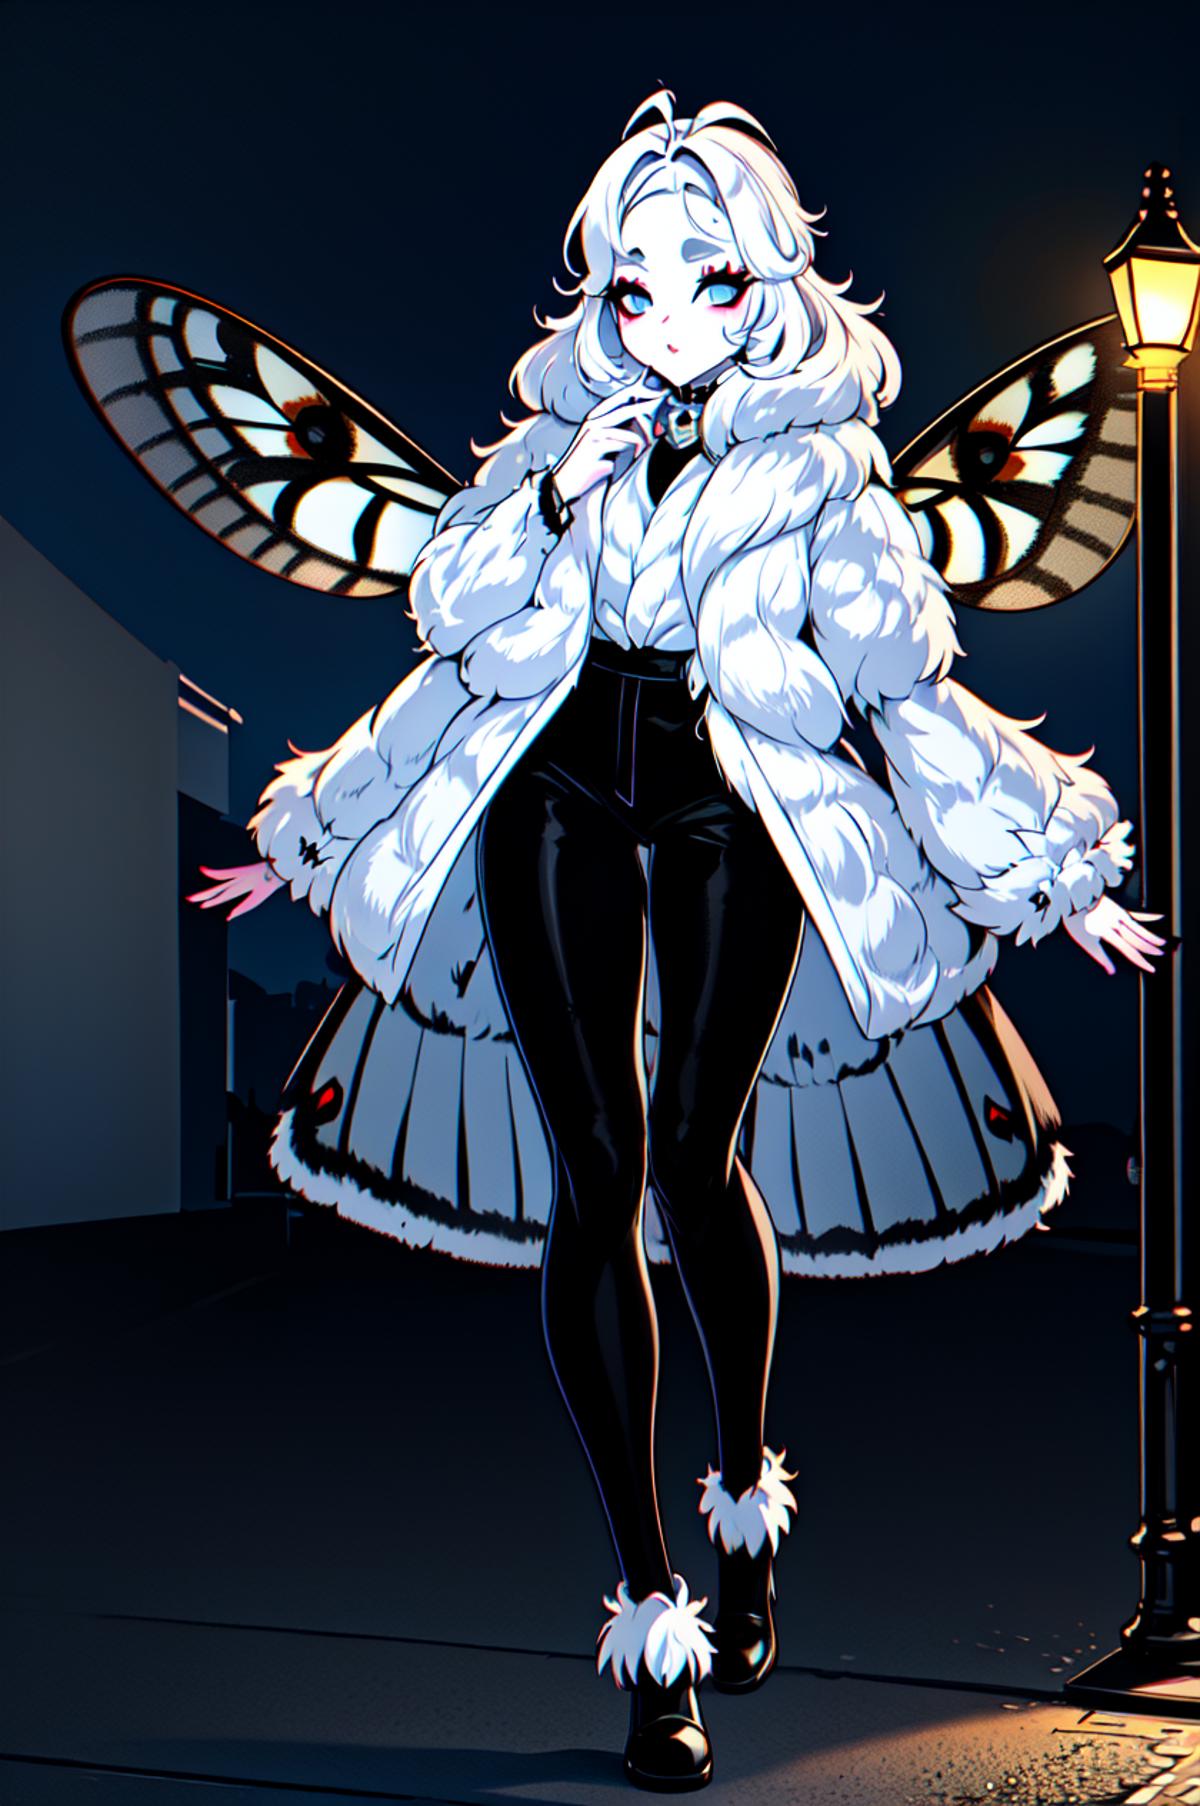 Moth Girls [Lycoris] image by duskfallcrew